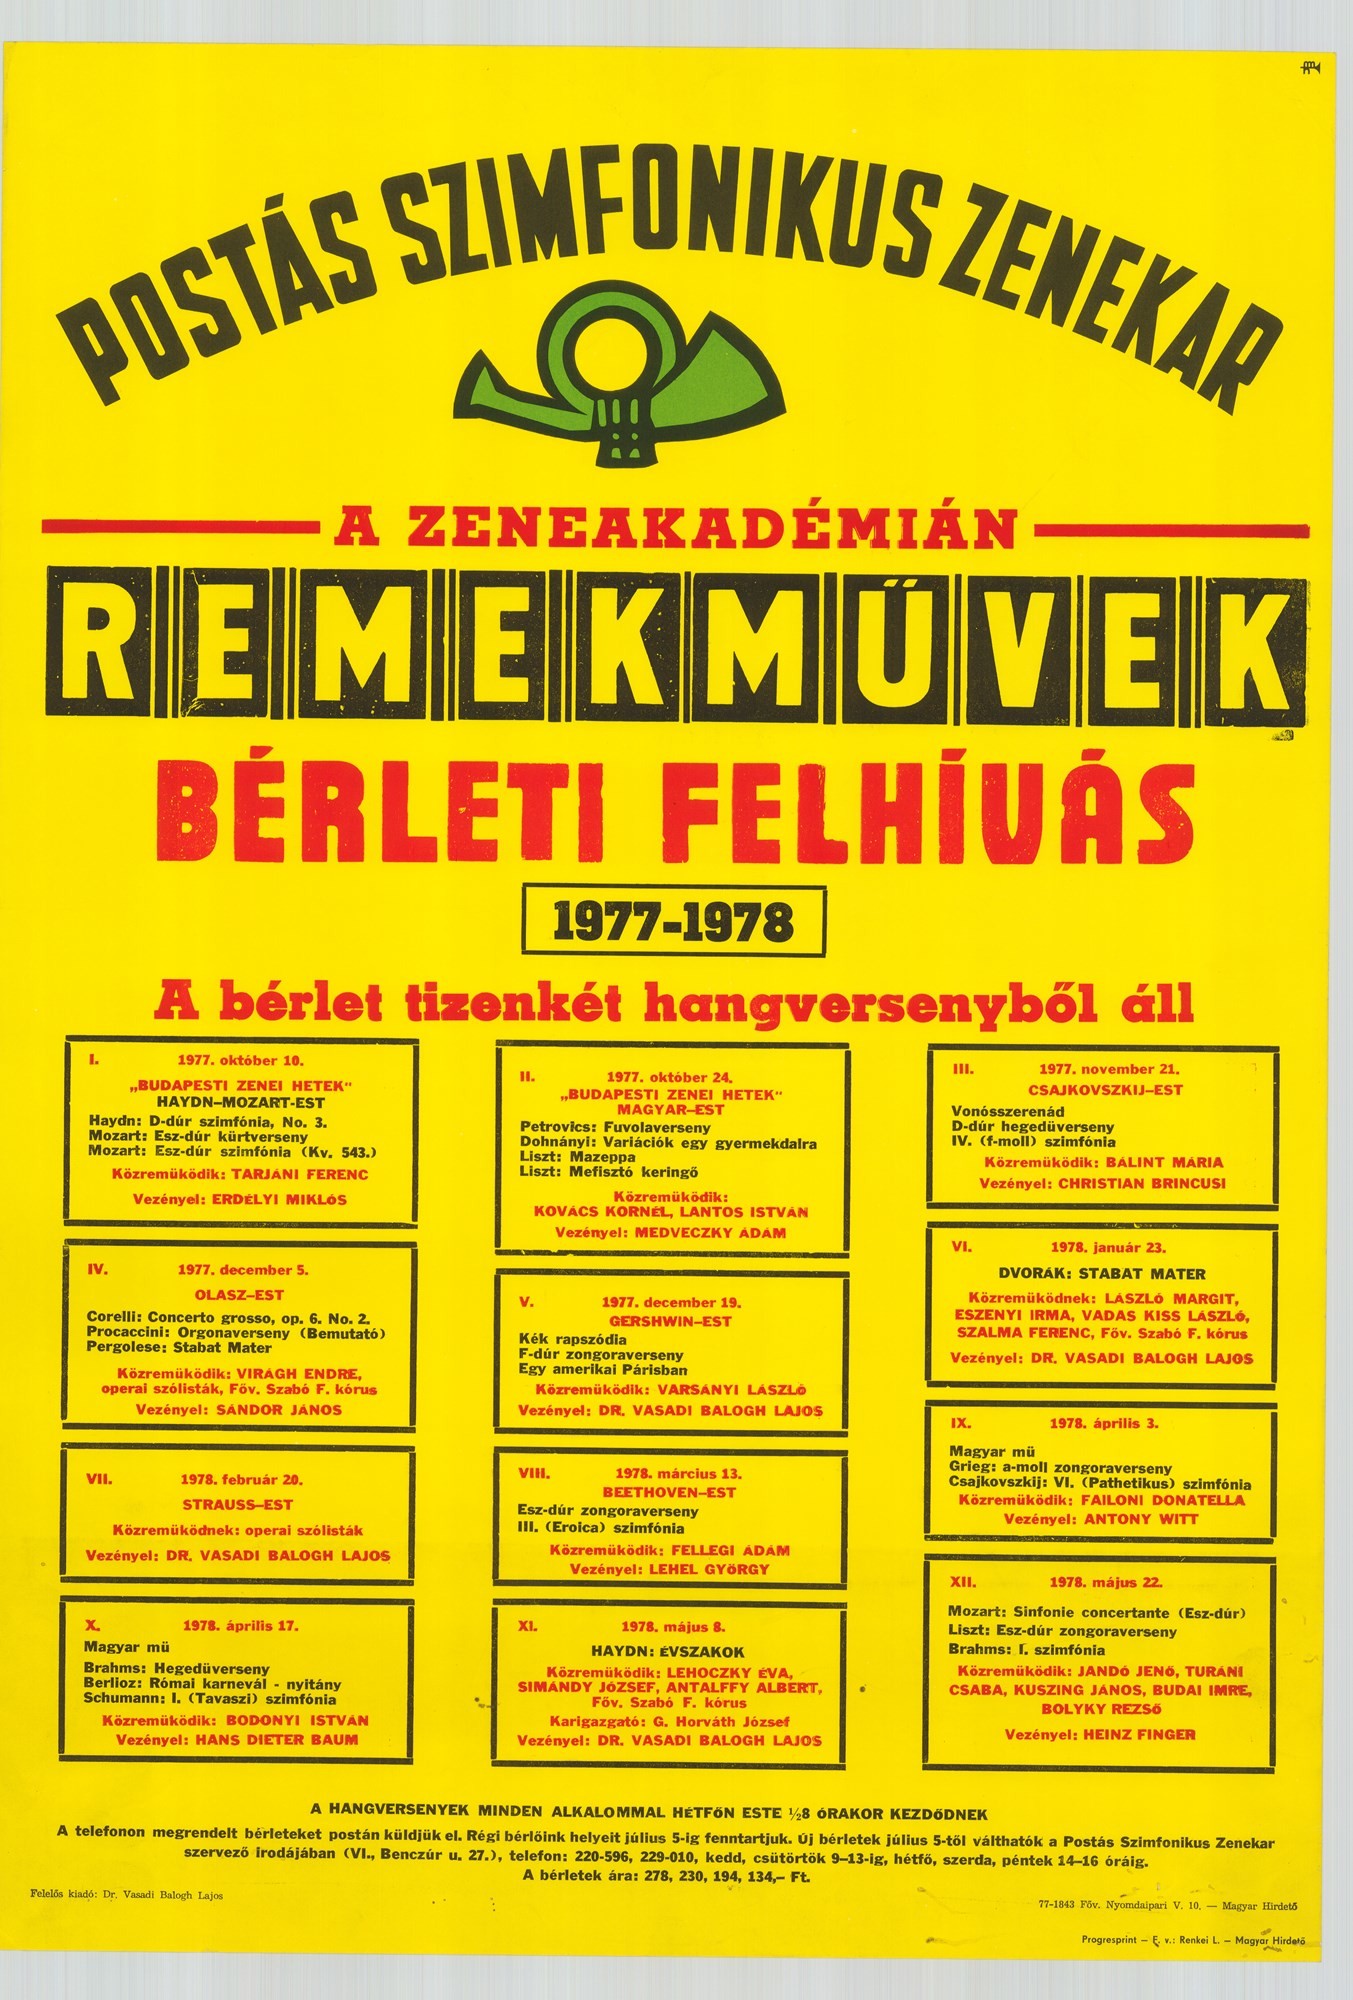 Plakát - Postás Szimfonikus Zenekar a Zeneakadémián, Remekművek, Bérleti felhívás 1977-1978 (Postamúzeum CC BY-NC-SA)